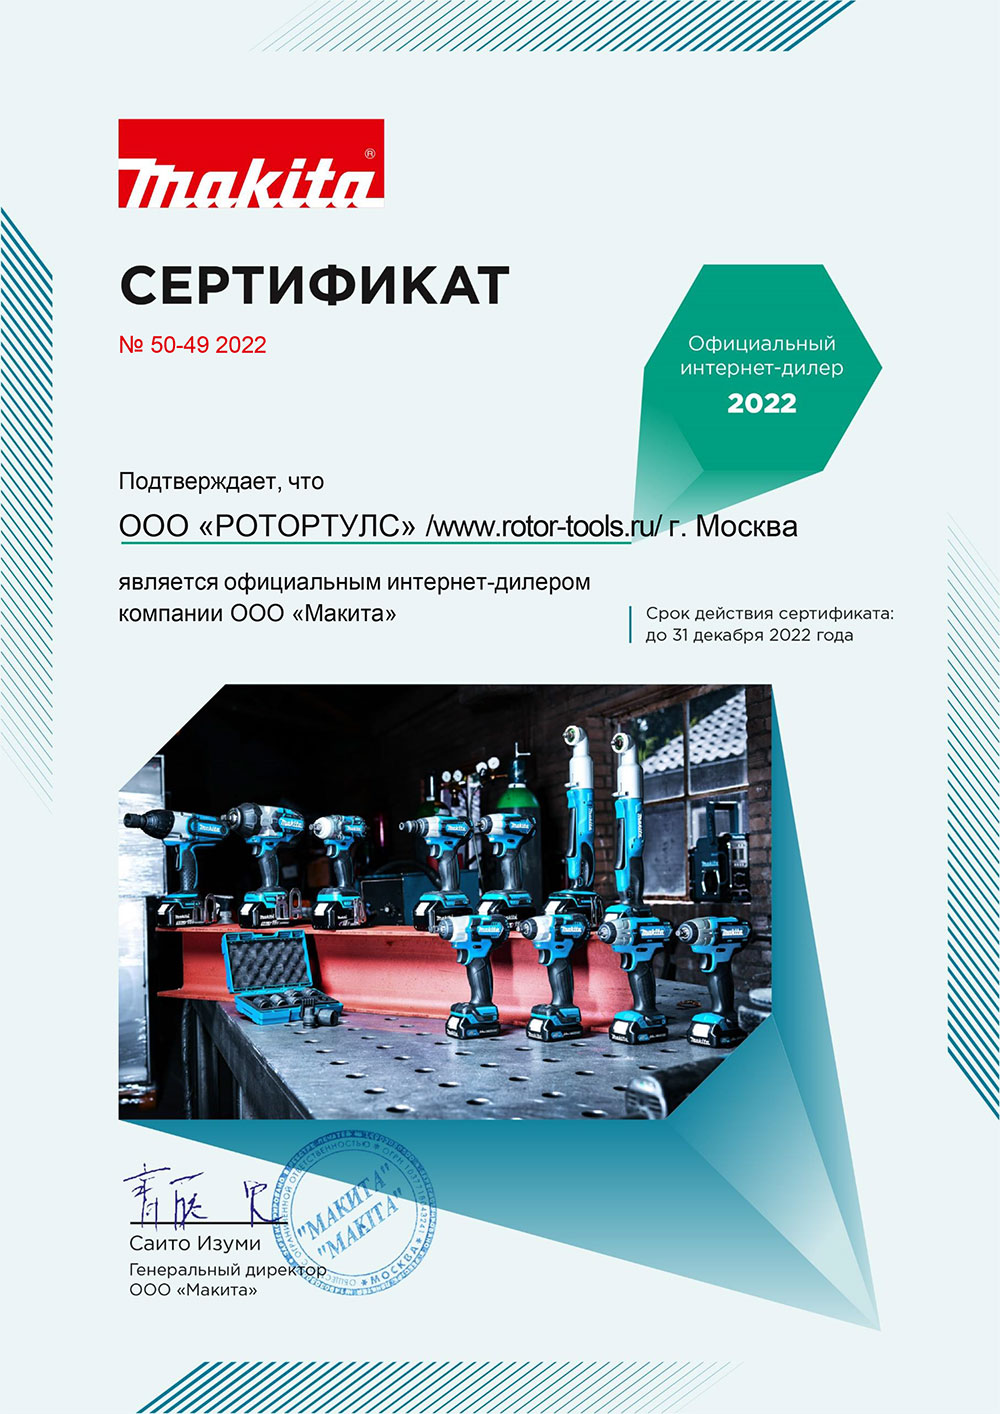 Сертификат официального дилера Макита 2022 года